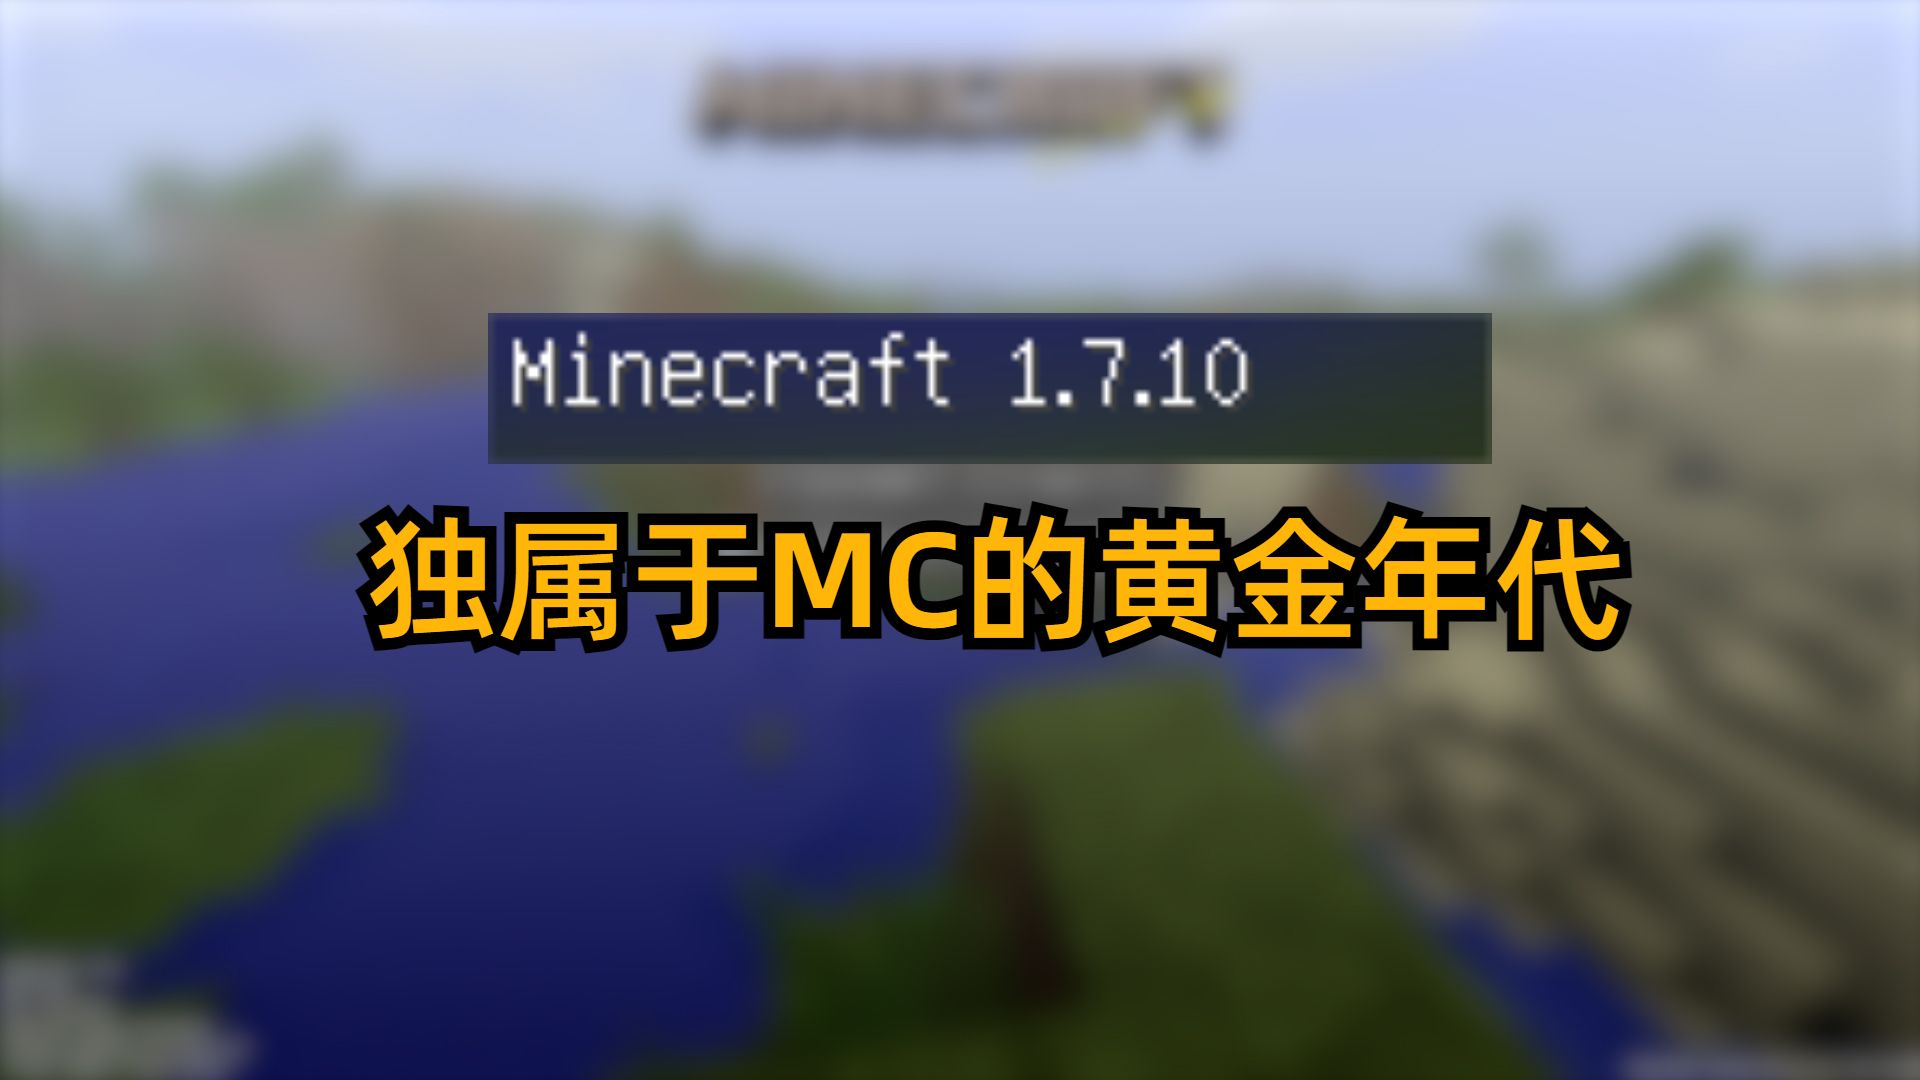 Minecraft历史上一个伟大的时代:1.7.10